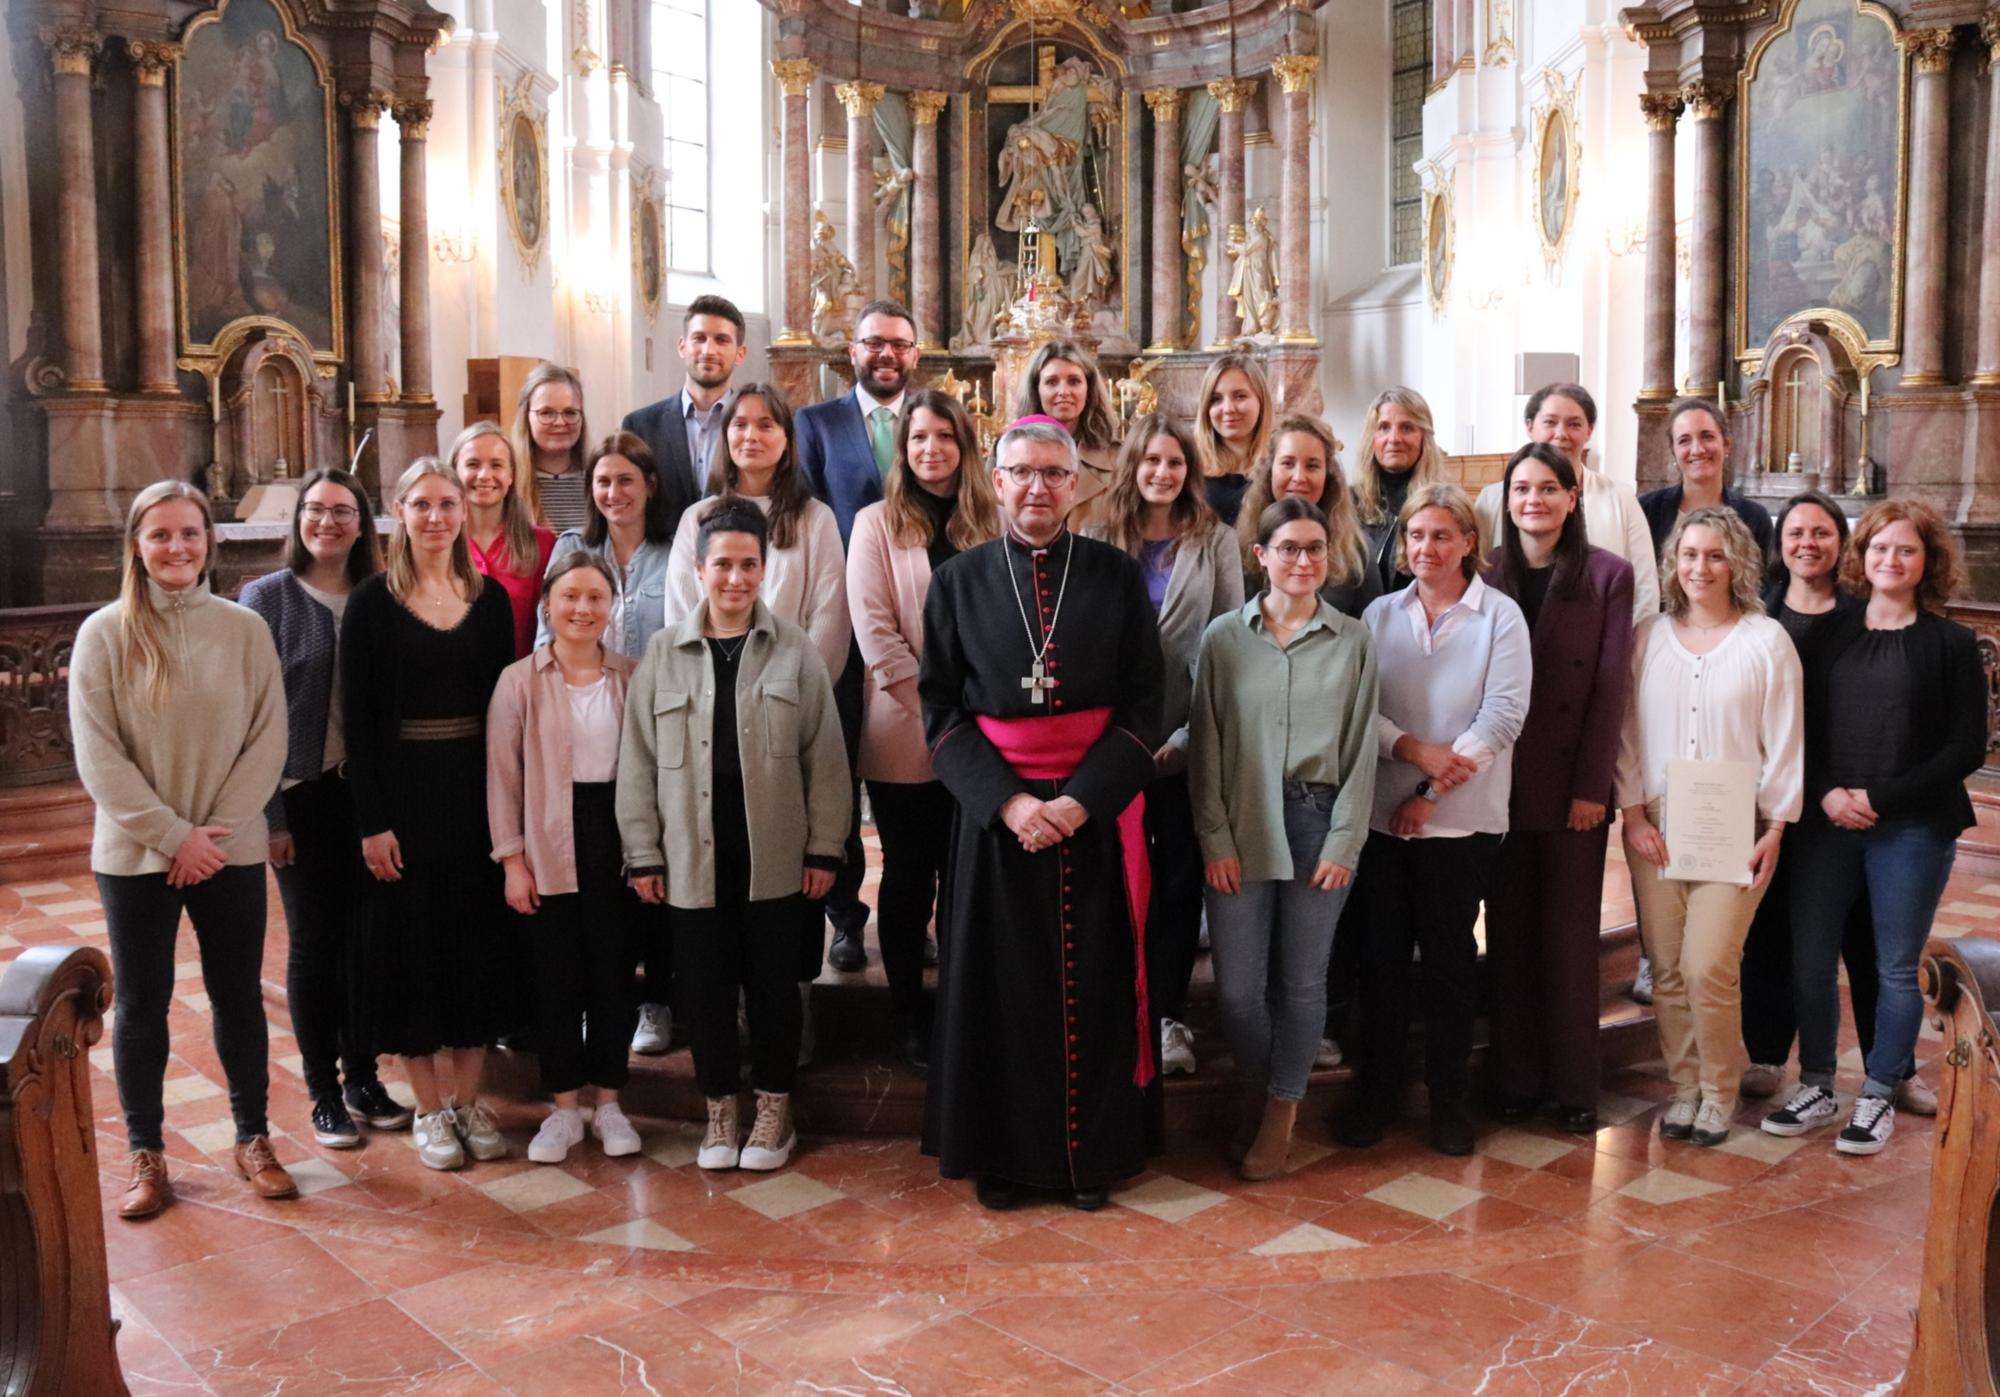 Religionslehrerinnen und Religionslehrer haben die Missio canonica von Bischof Peter Kohlgraf erhalten (c) Bistum Mainz/Hoffmann